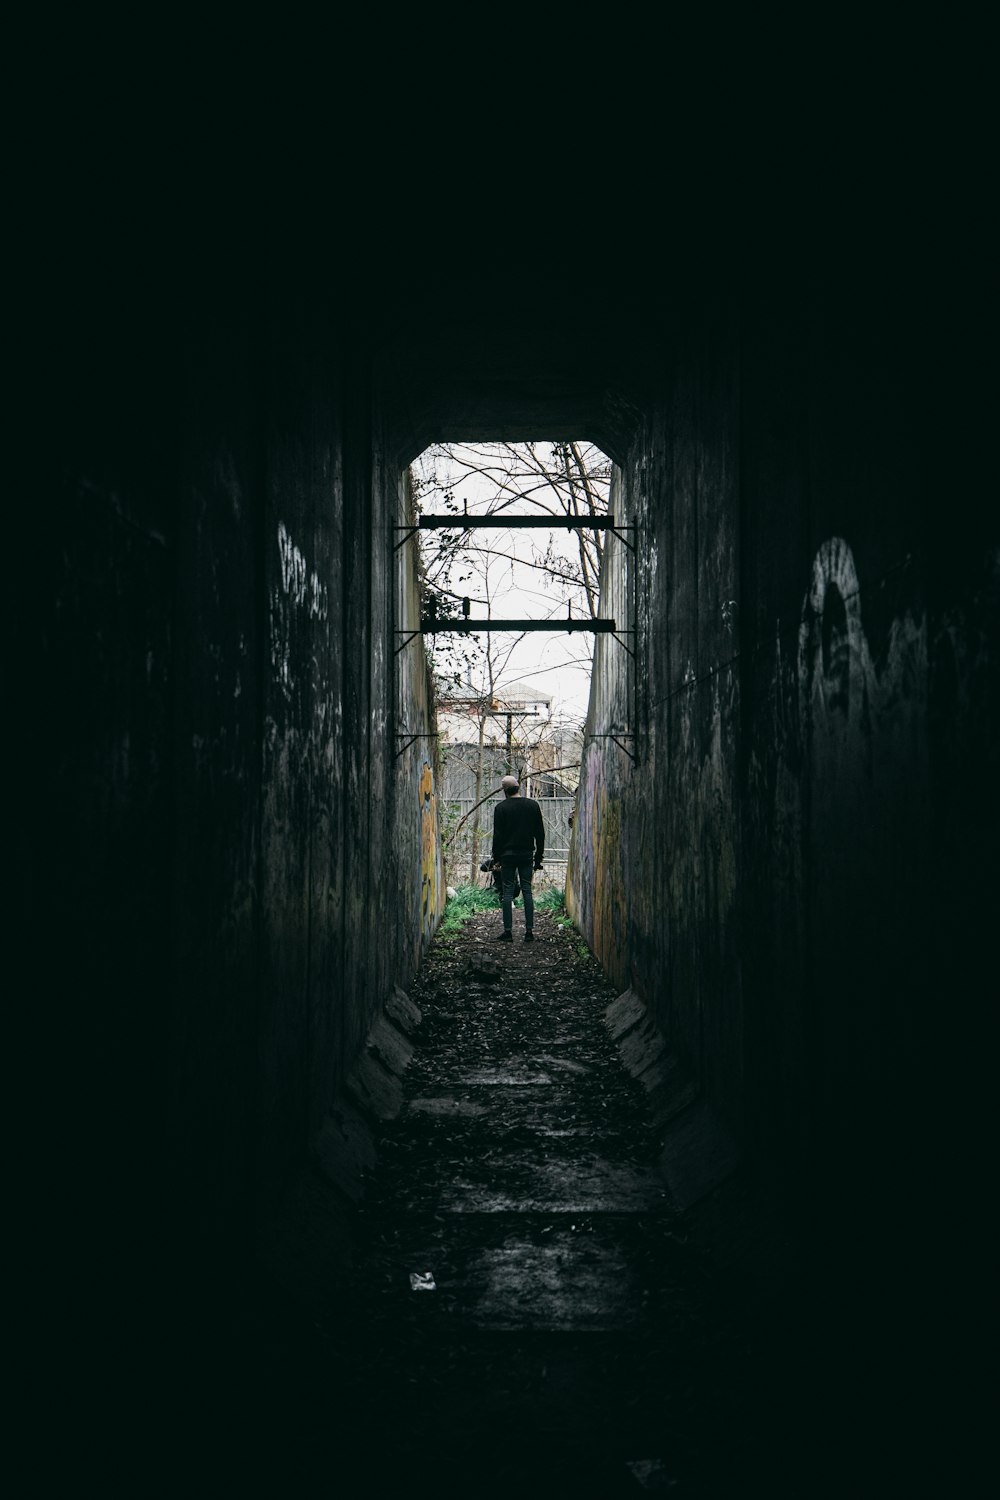 Persona con camisa verde caminando por el túnel